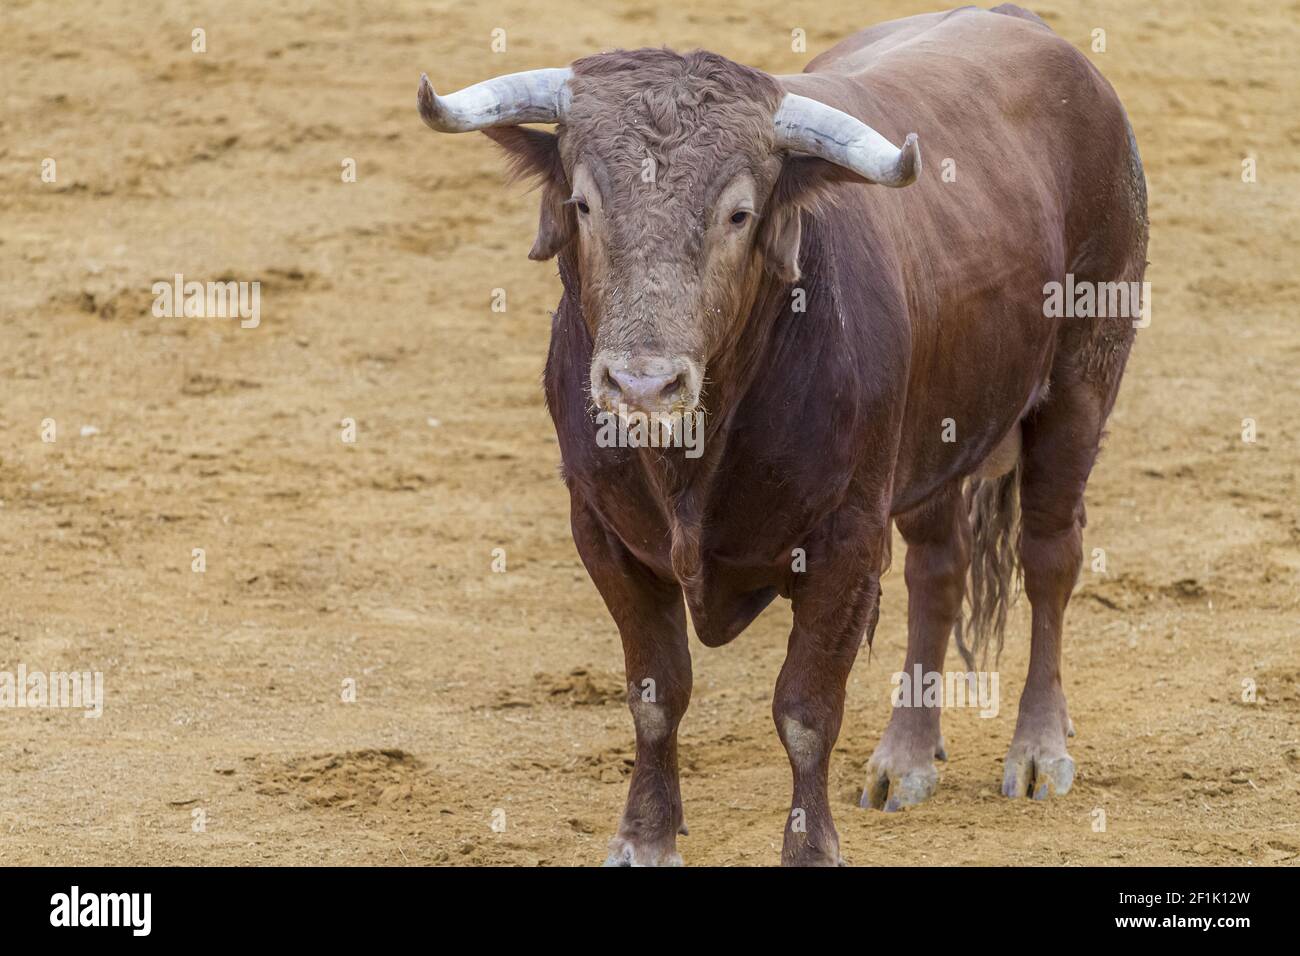 Kampf, Stierkampf, spanischer tapferer Stier in einer Stierkampfarena. Das Tier ist braun und hat sehr scharfe Hörner Stockfoto